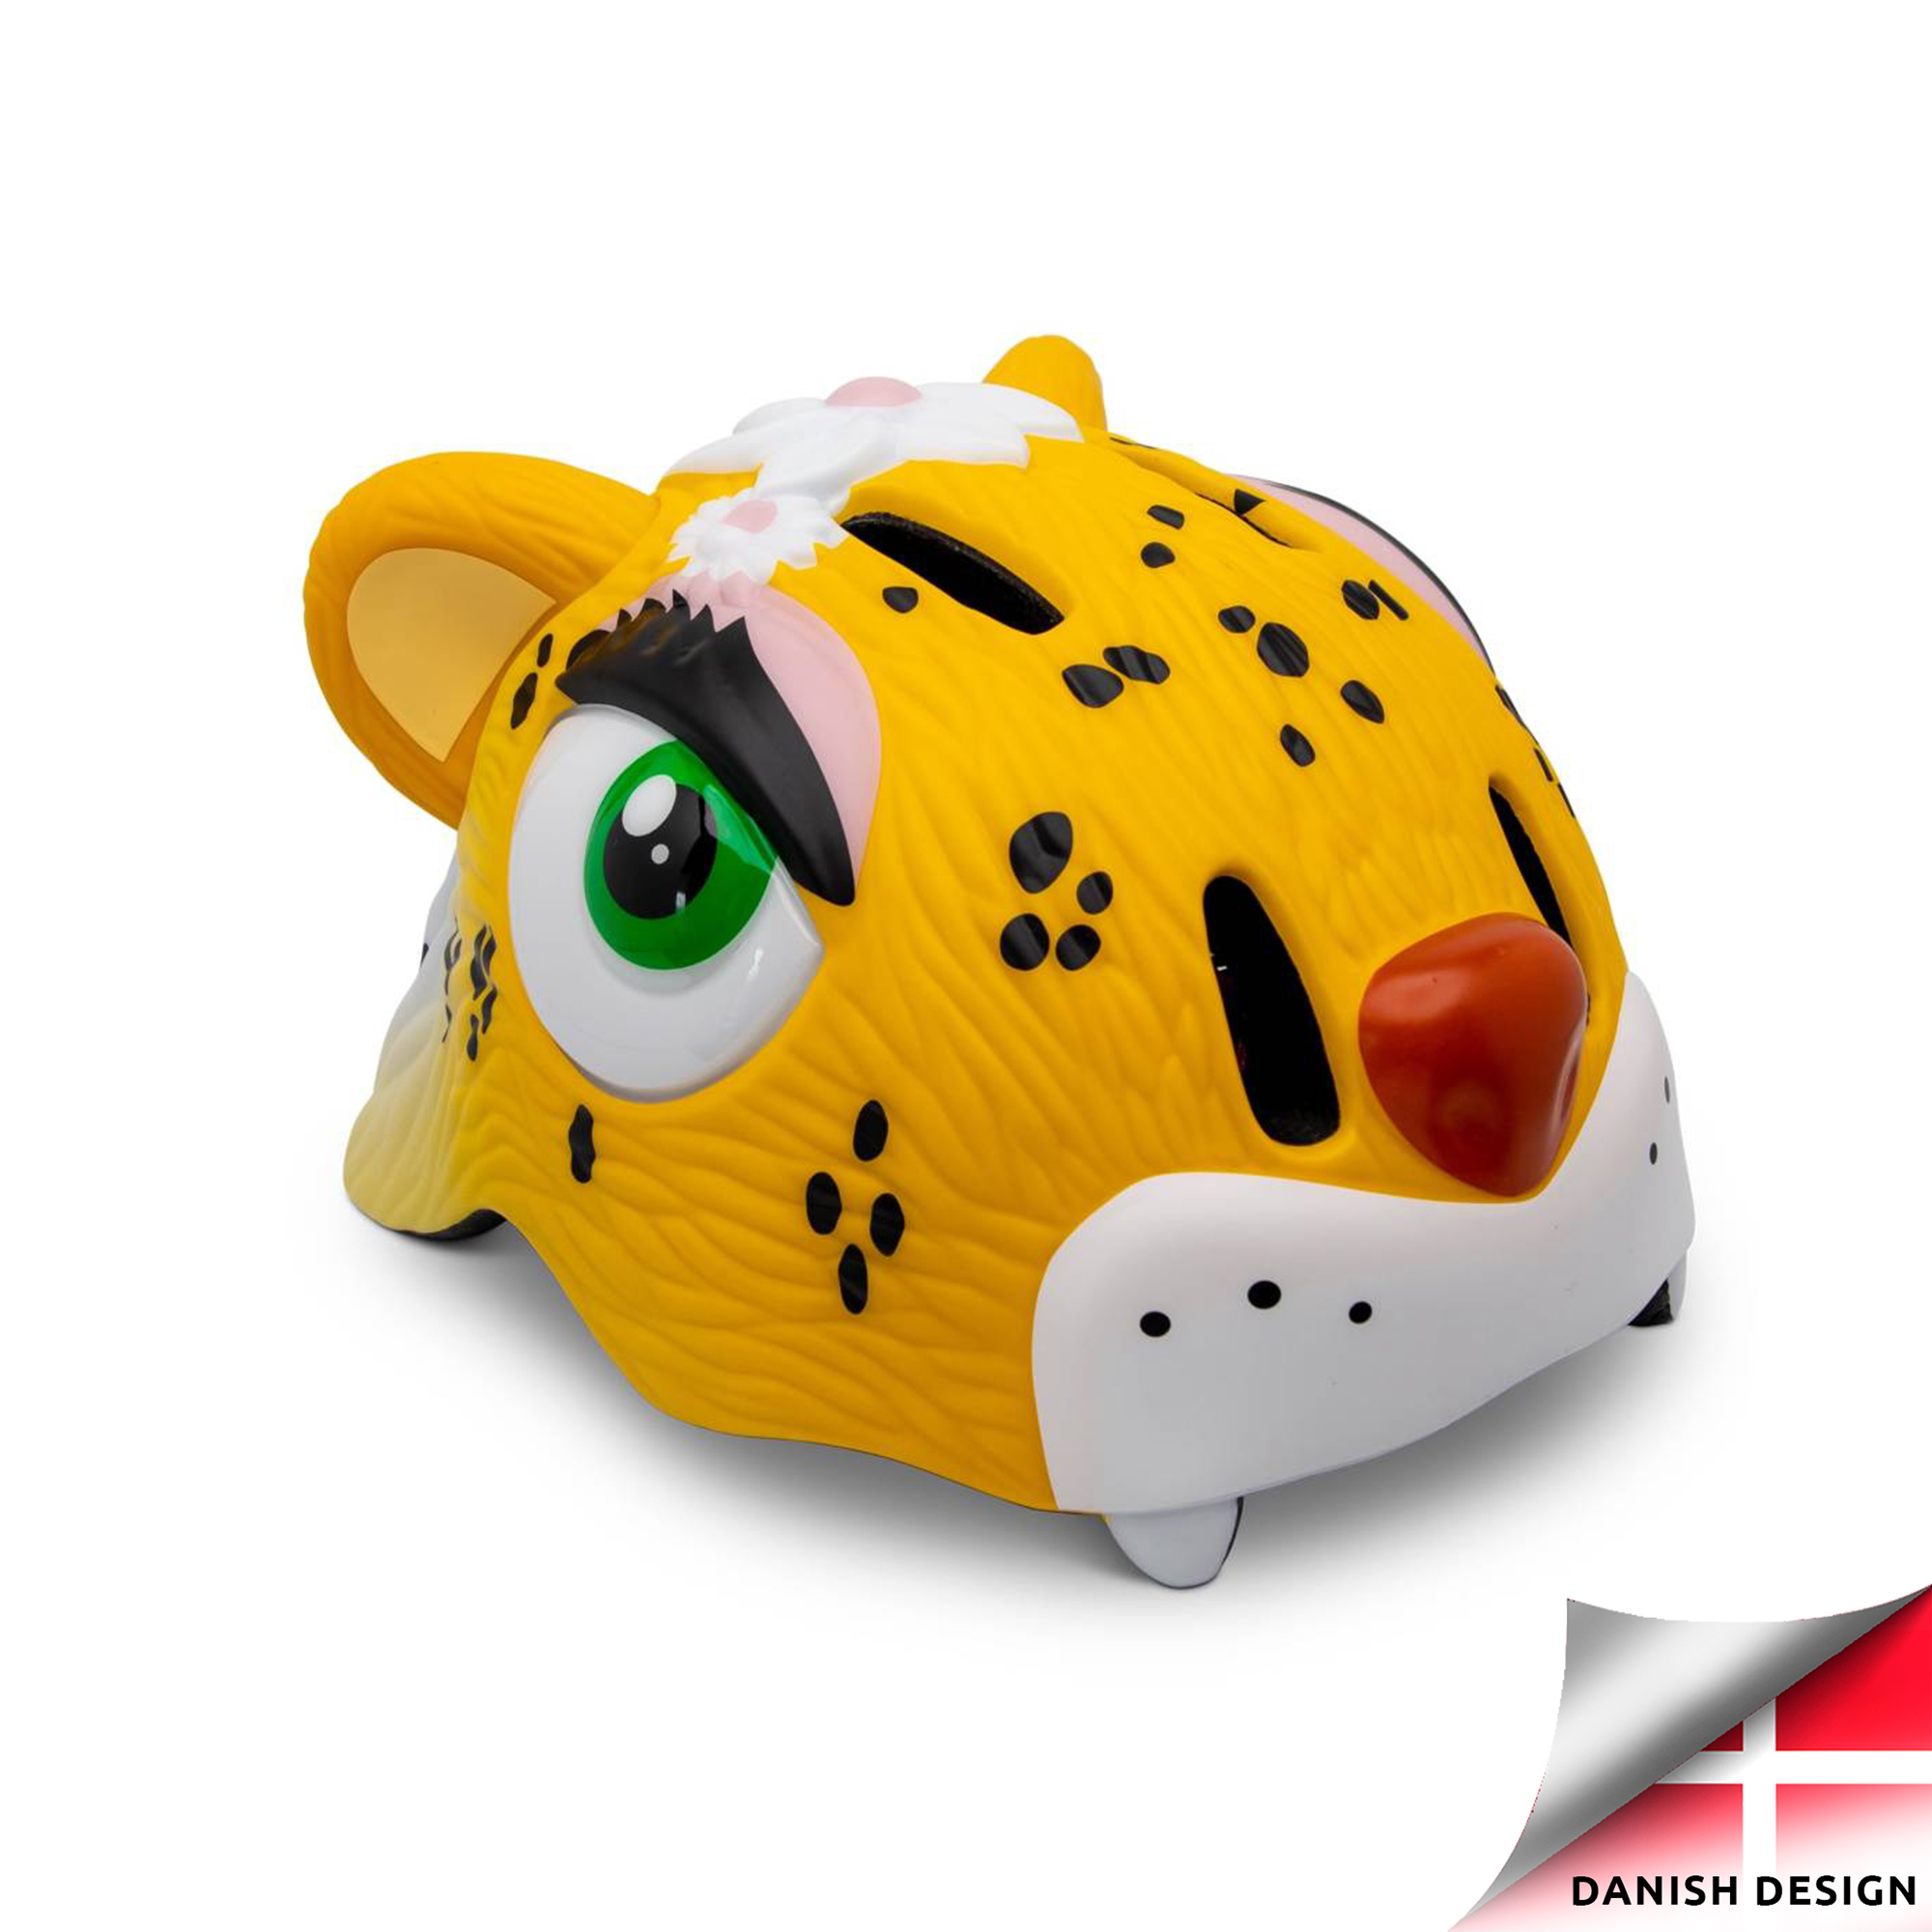 Se Crazy Safety gul leopardcykelhjelm til børn. Testet, sikkerhedsgodkendt og EN1078 certificeret. hos Crazy Safety